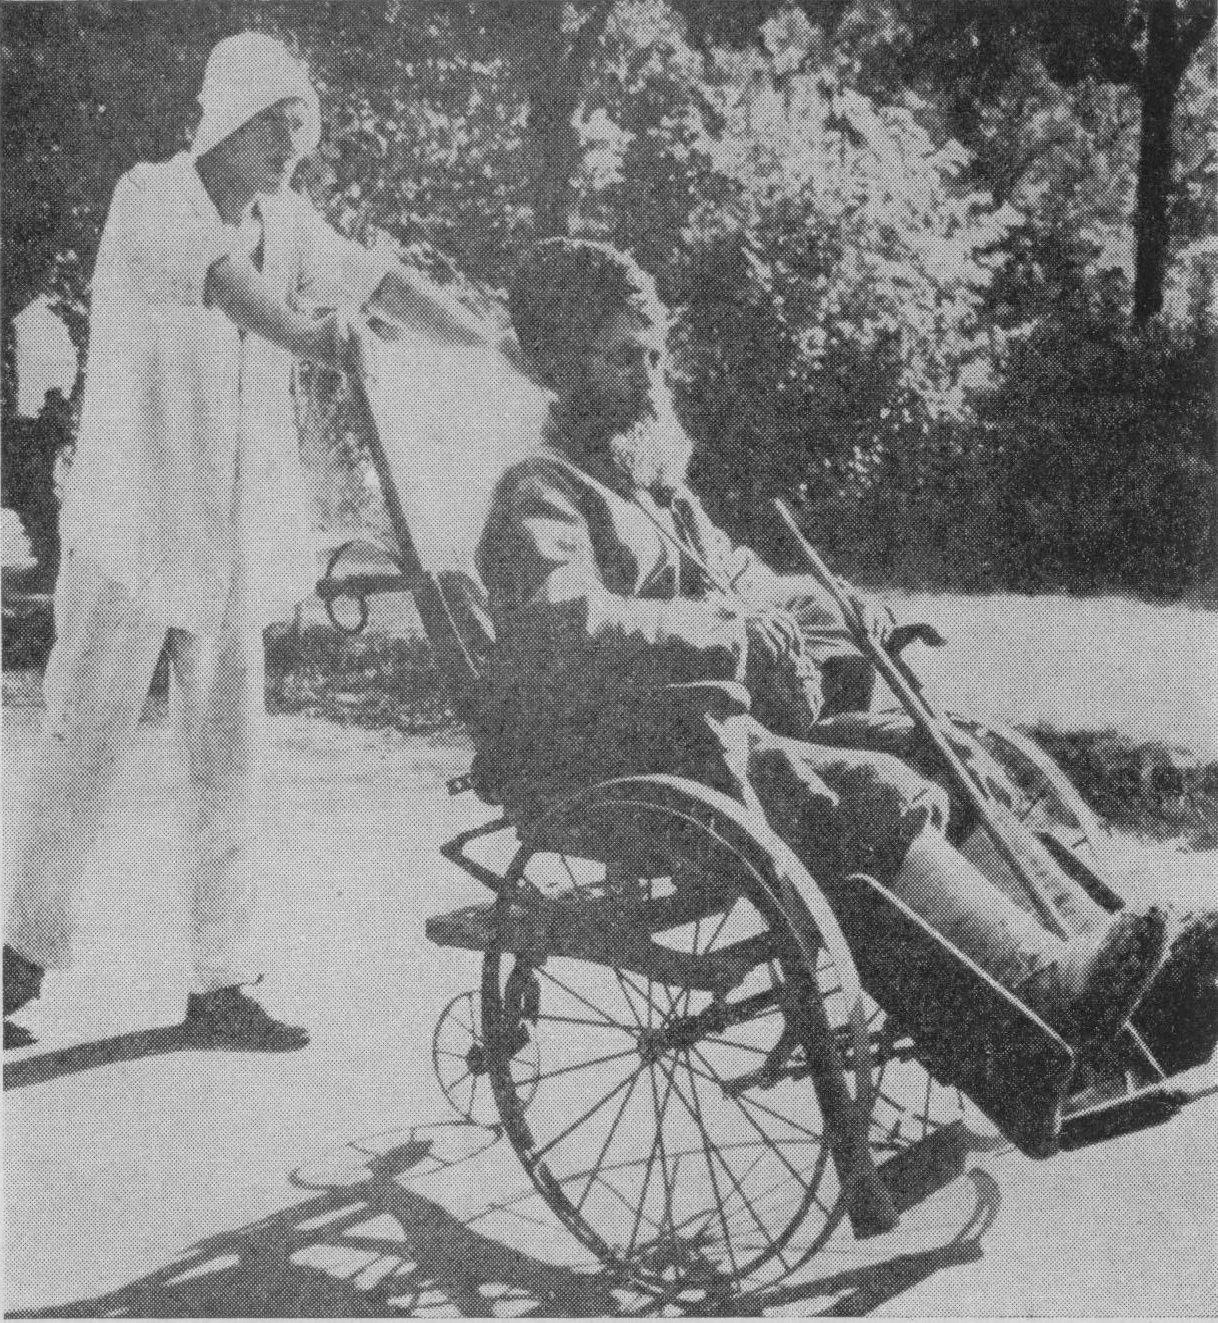 Первый крестьянин на советском курорте Саки. Фото 1925 года